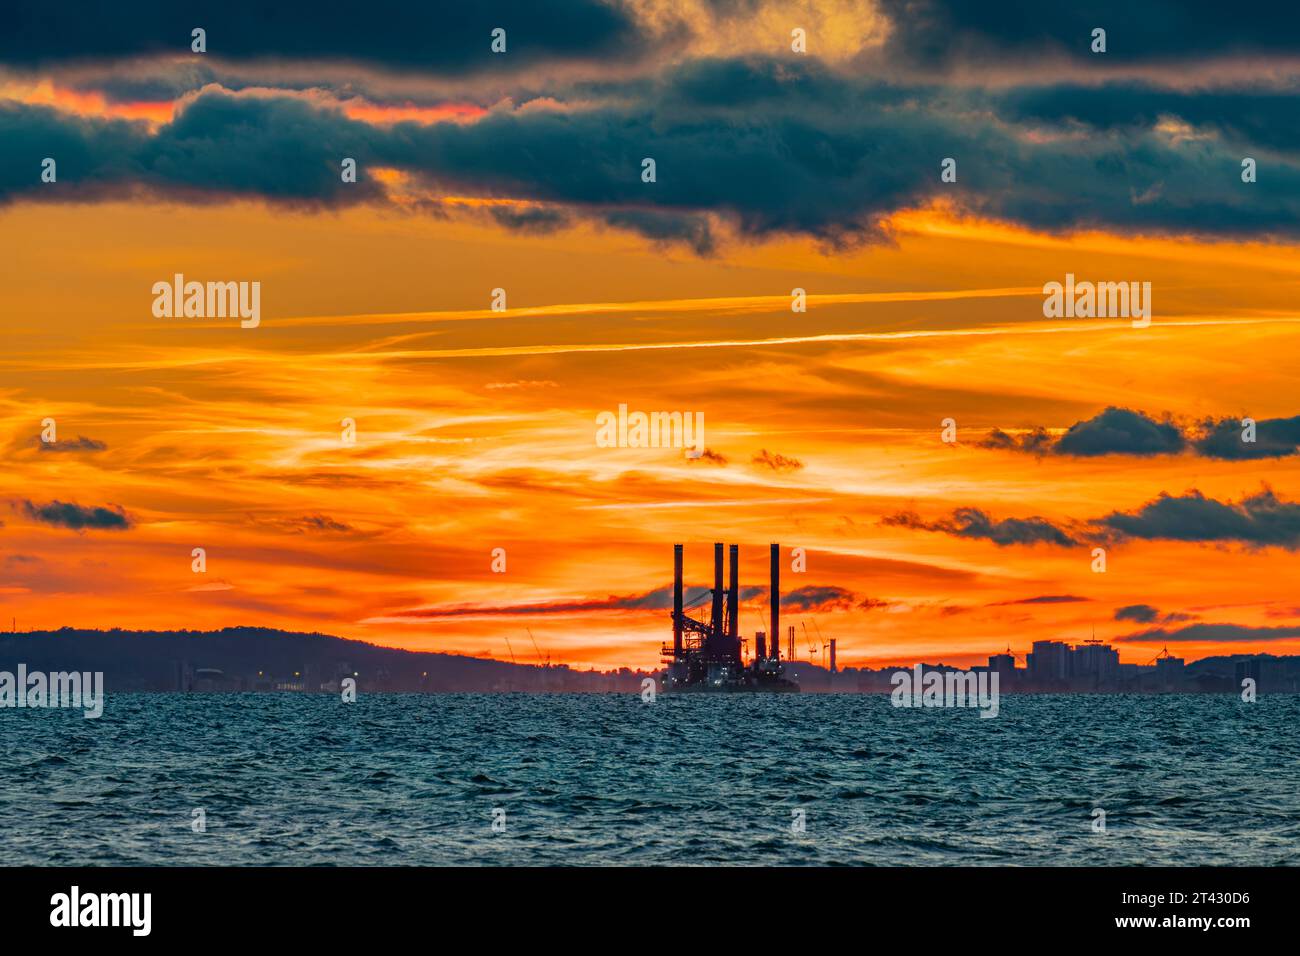 Le soleil couchant illuminant l'horizon avec Sea Challenger détouffé le ciel coloré Banque D'Images